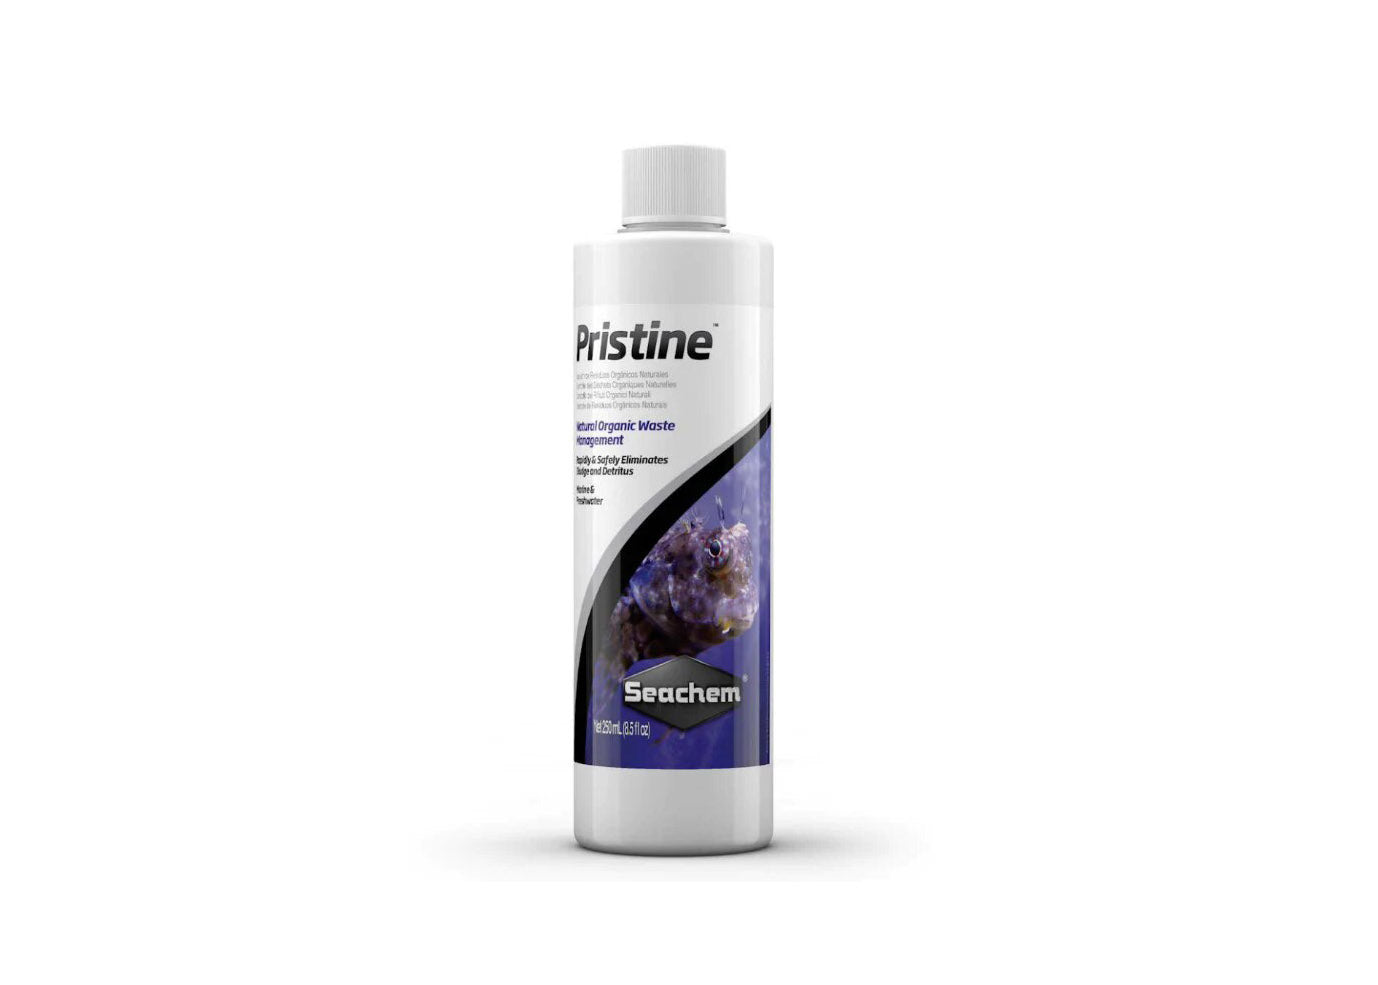 Seachem Pristine white bottle with dark purple branding that reads "Pristine Seachem"